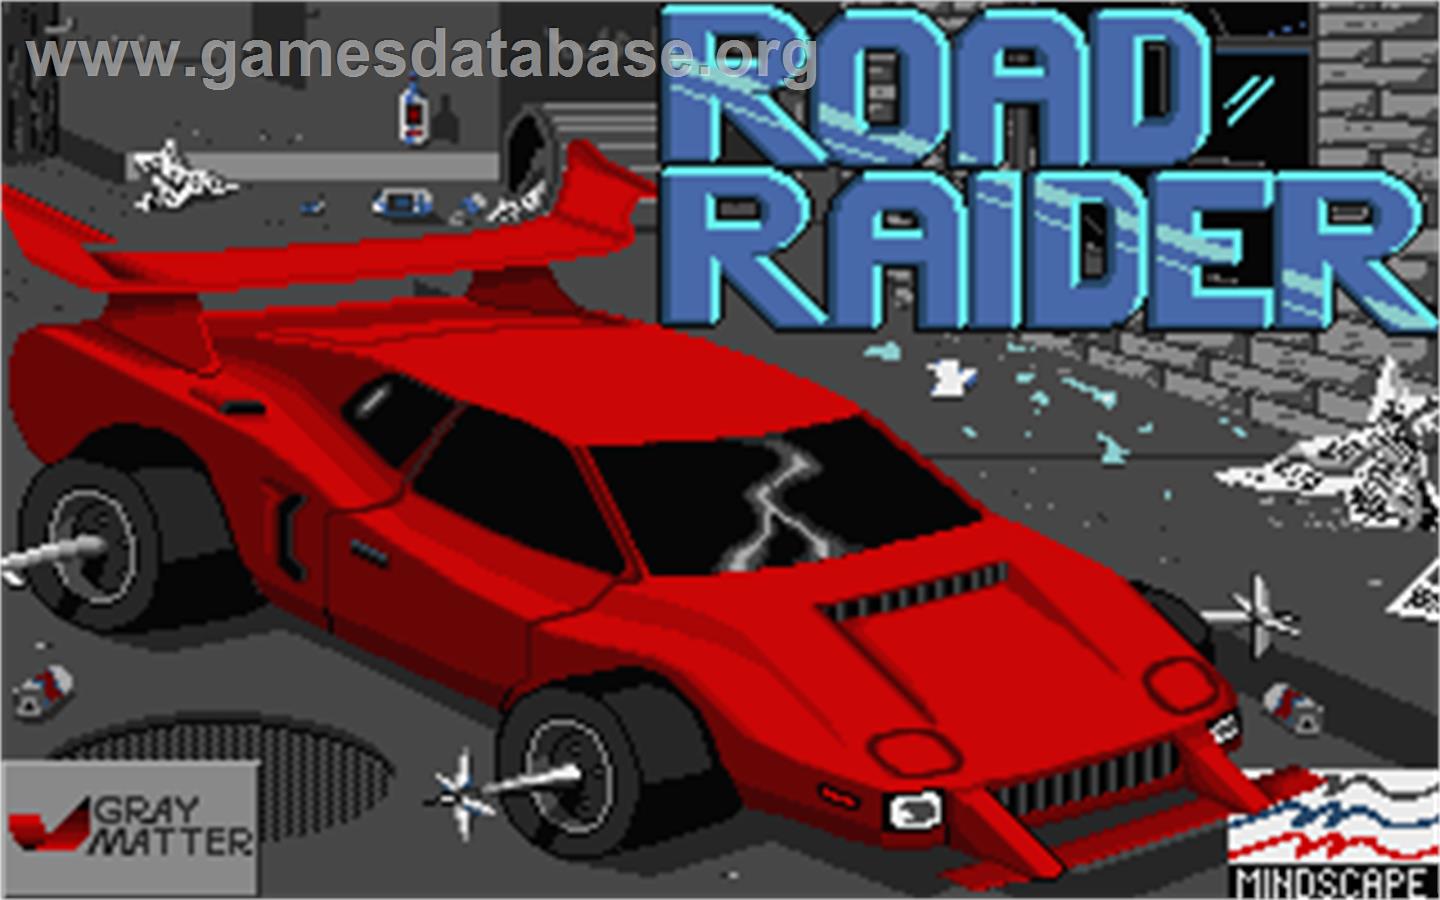 Road Raider - Atari ST - Artwork - Title Screen